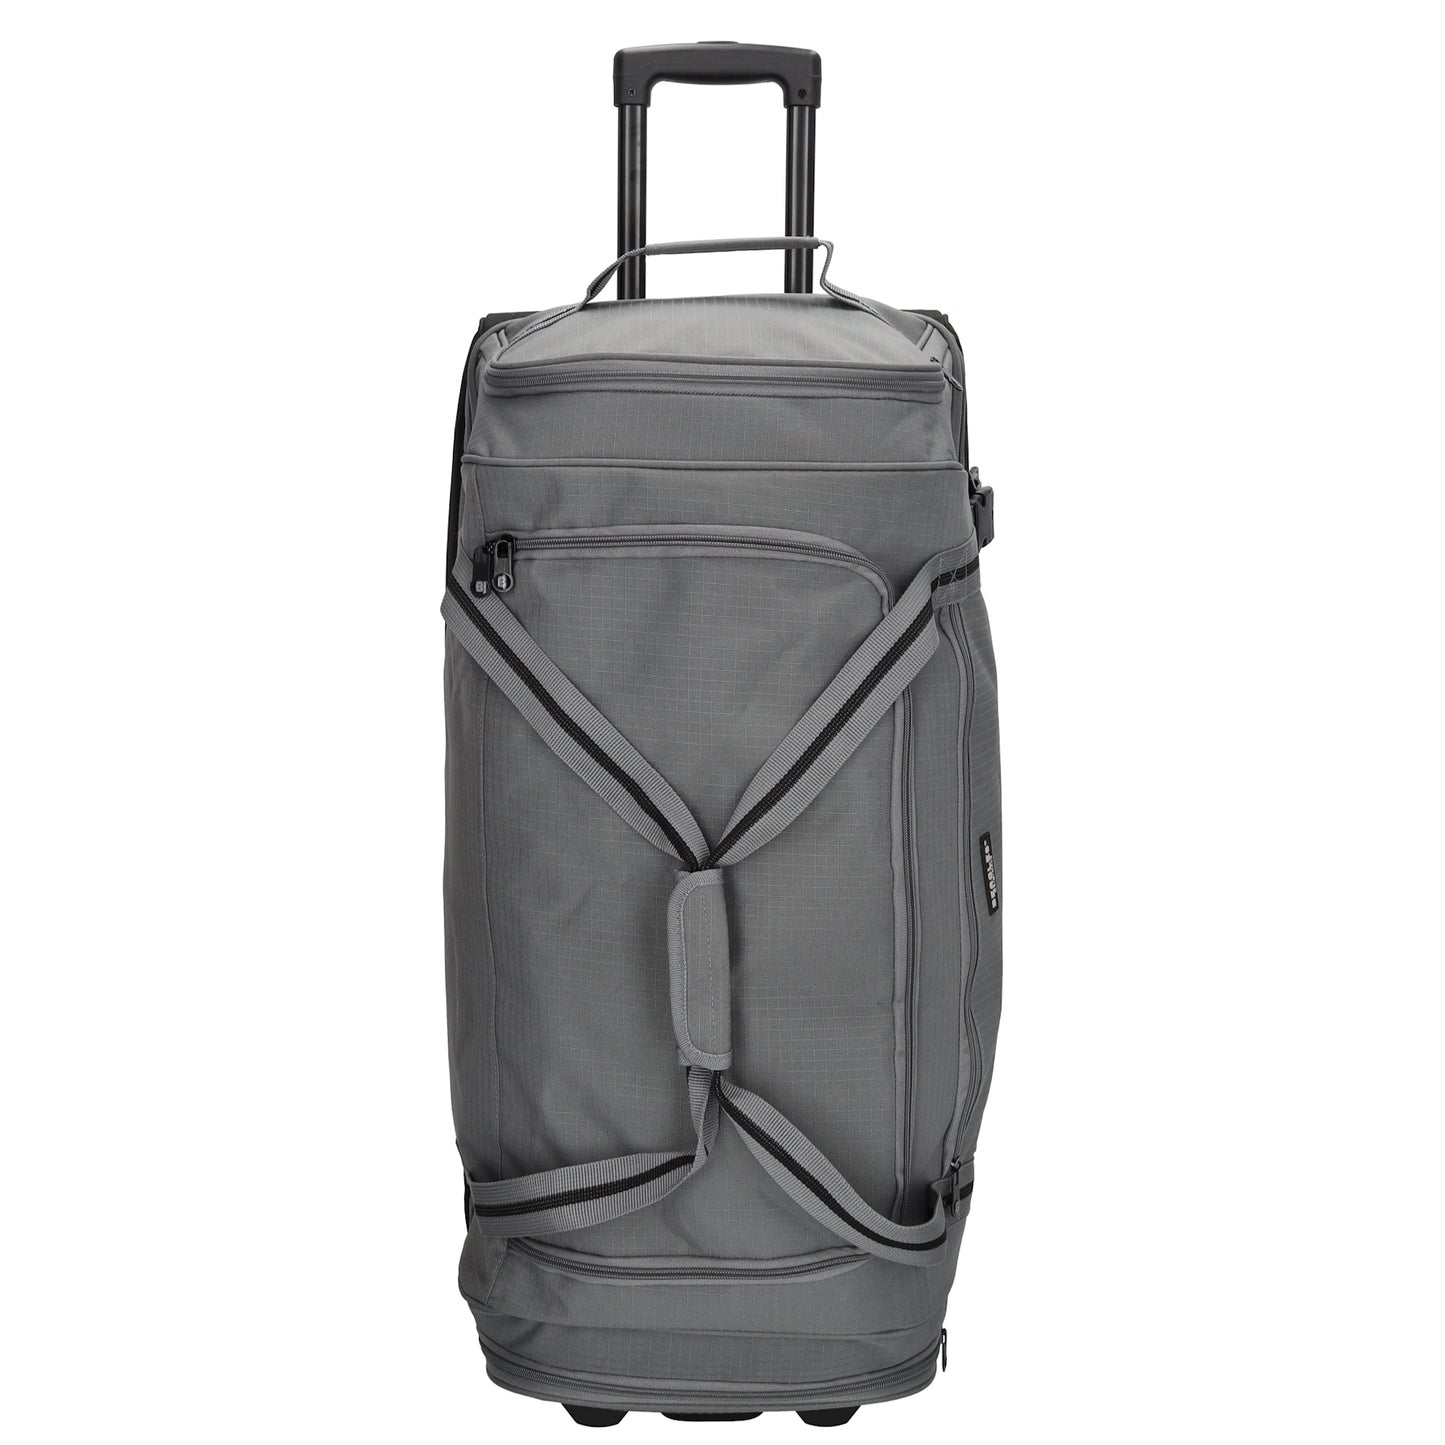 Trolleyreisetasche 80 x 36cm in Grau mit Seitentaschen